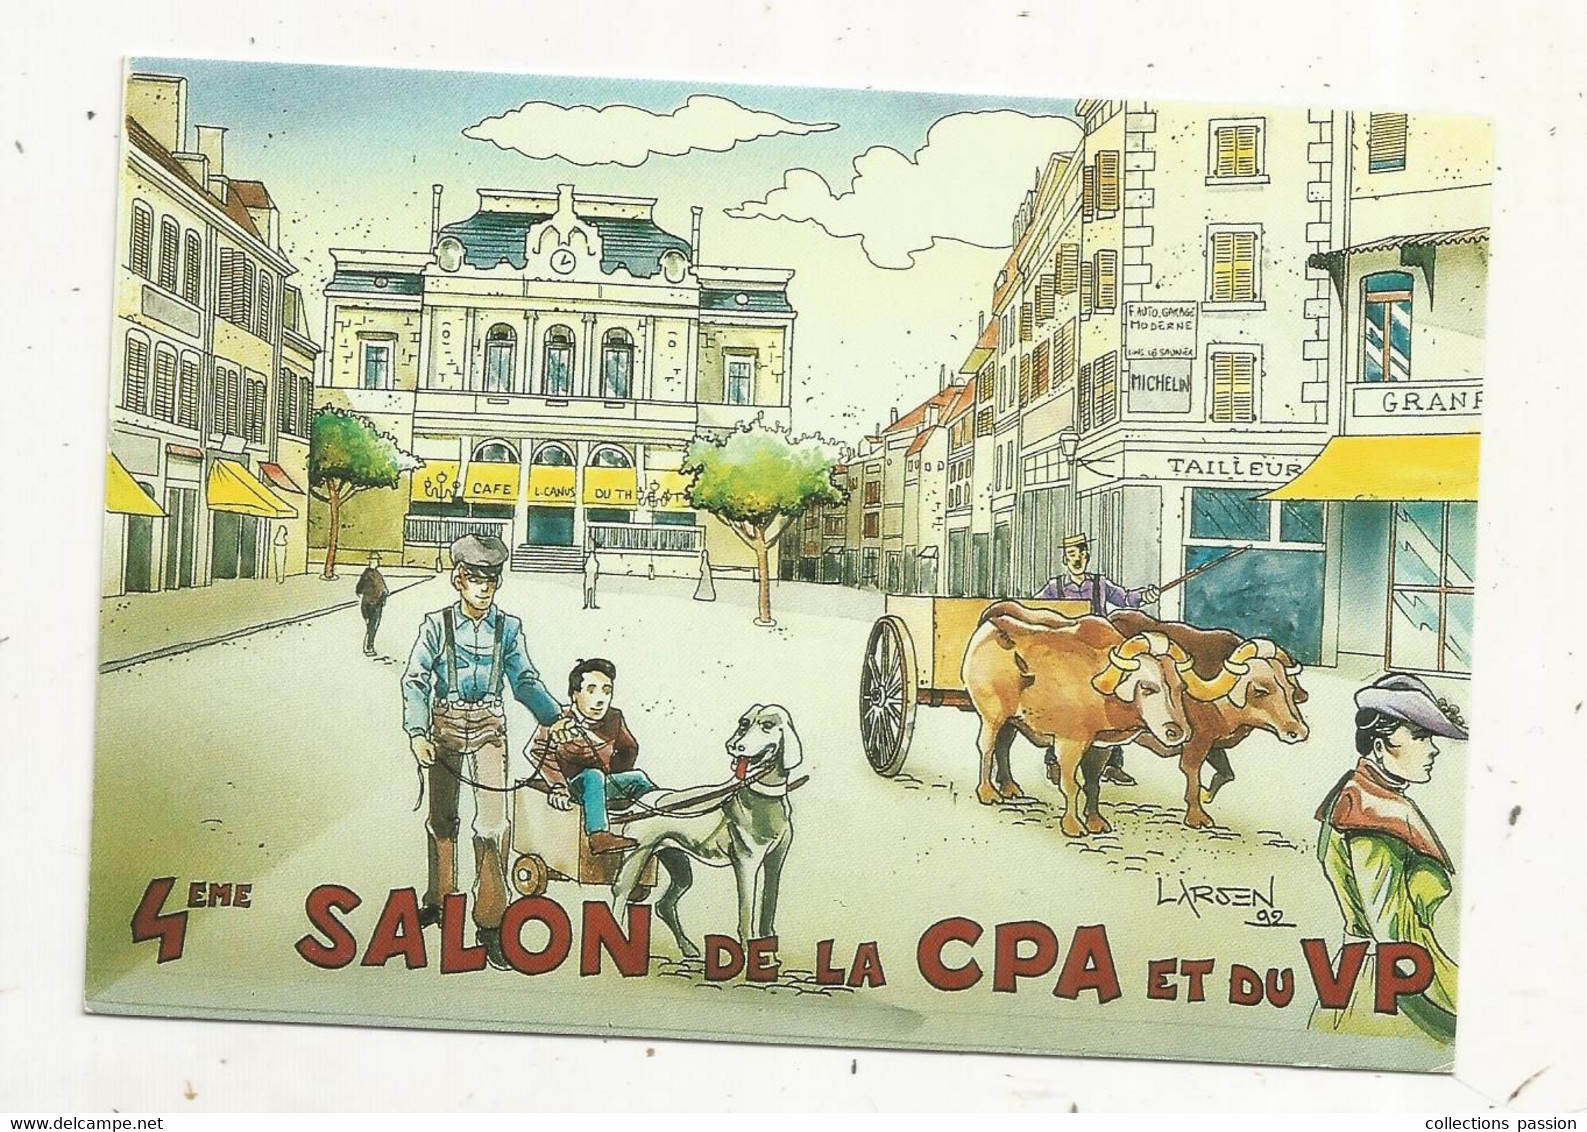 Cp, Bourses & Salons De Collections, 4 E SALON DE LA  CPA ET DU VP, Lons Le Saunier,1993, Illustrateur: LARSEN, Vierge - Bourses & Salons De Collections